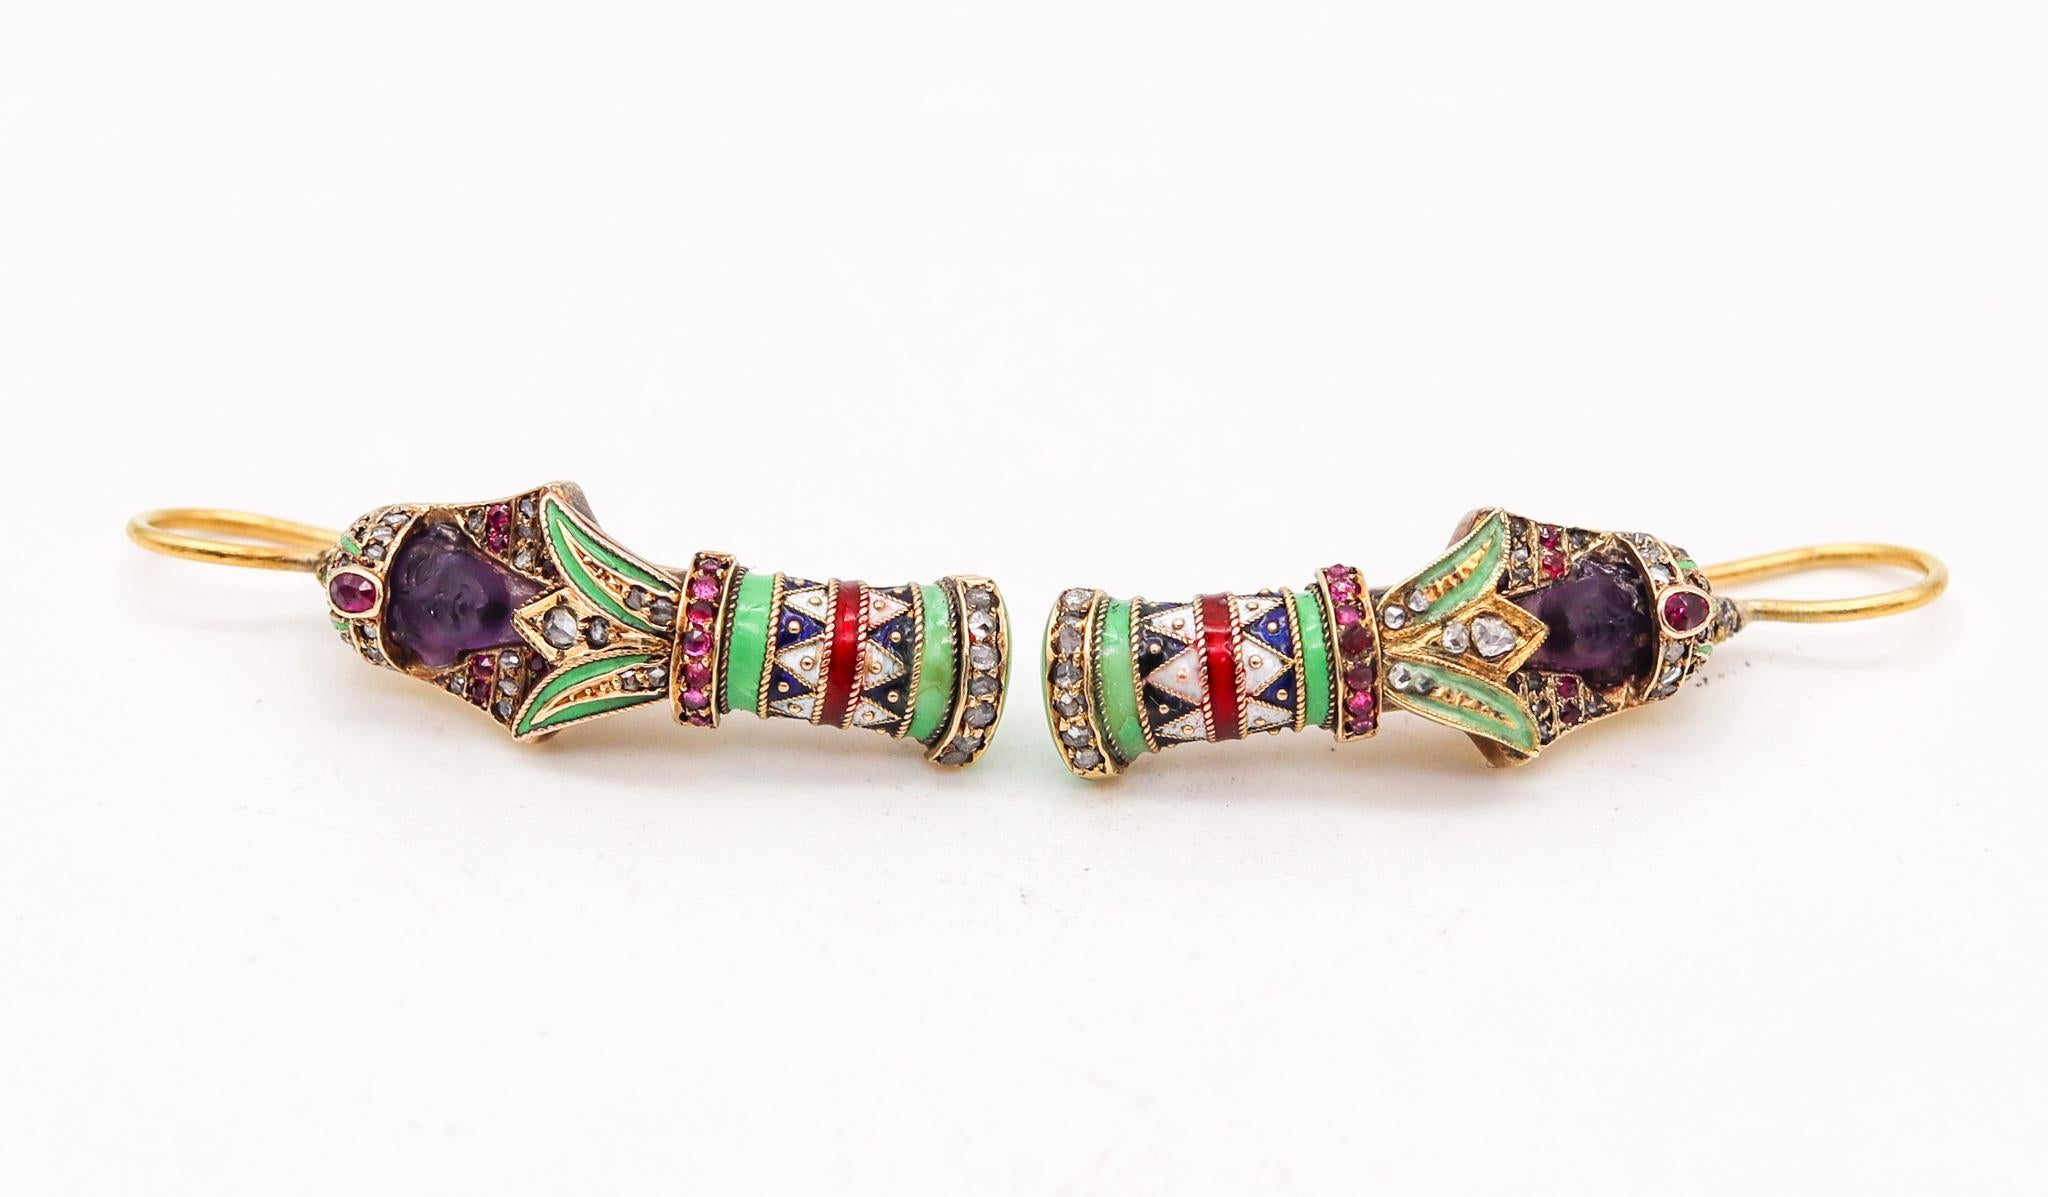 Boucles d'oreilles de style égyptien conçues par Carl Bacher.

Exceptionnelle paire de boucles d'oreilles pendantes, créée à Vienne en Autriche dans l'atelier de joaillerie de Carl Bacher, à la fin du 19e siècle. Cette paire fantastique a été